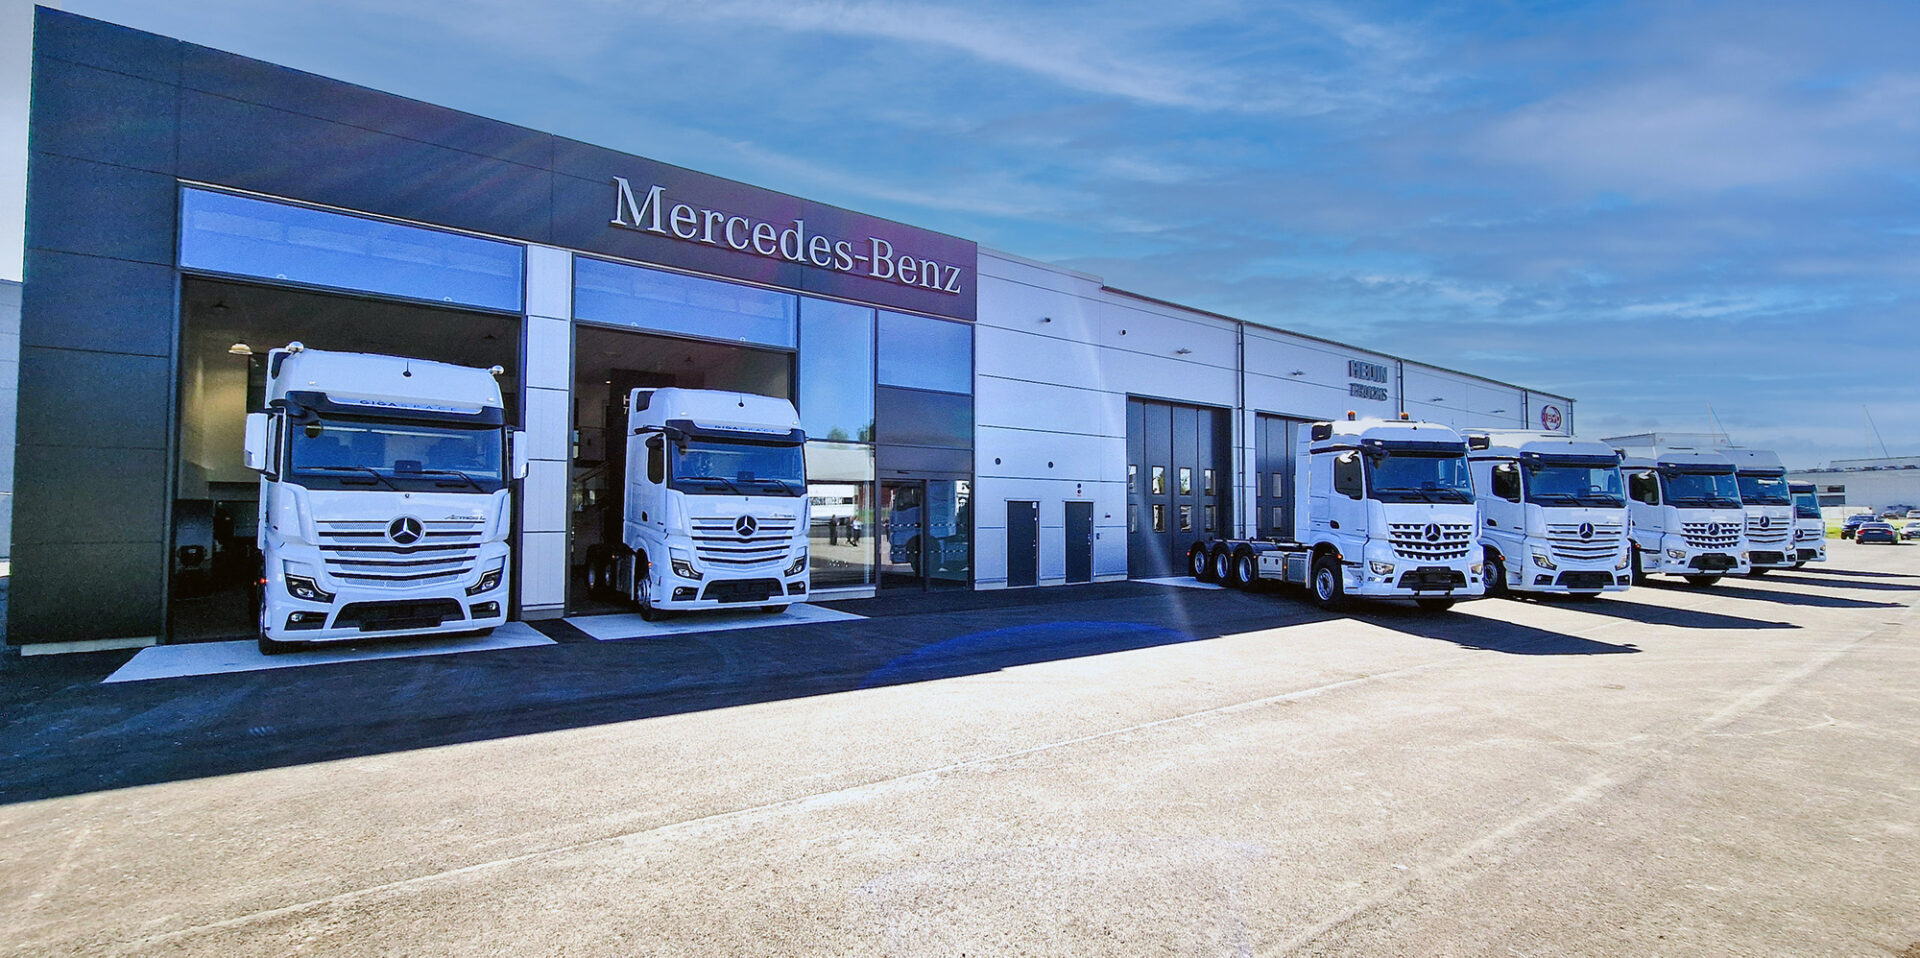 Hedin Bils nya Mercedes-Benz Lastbilsanläggning i Linköping har verkstadsplats för tio lastbilar och får snart Sveriges första Megawattladdare för el-lastbilar. Foto: Veho